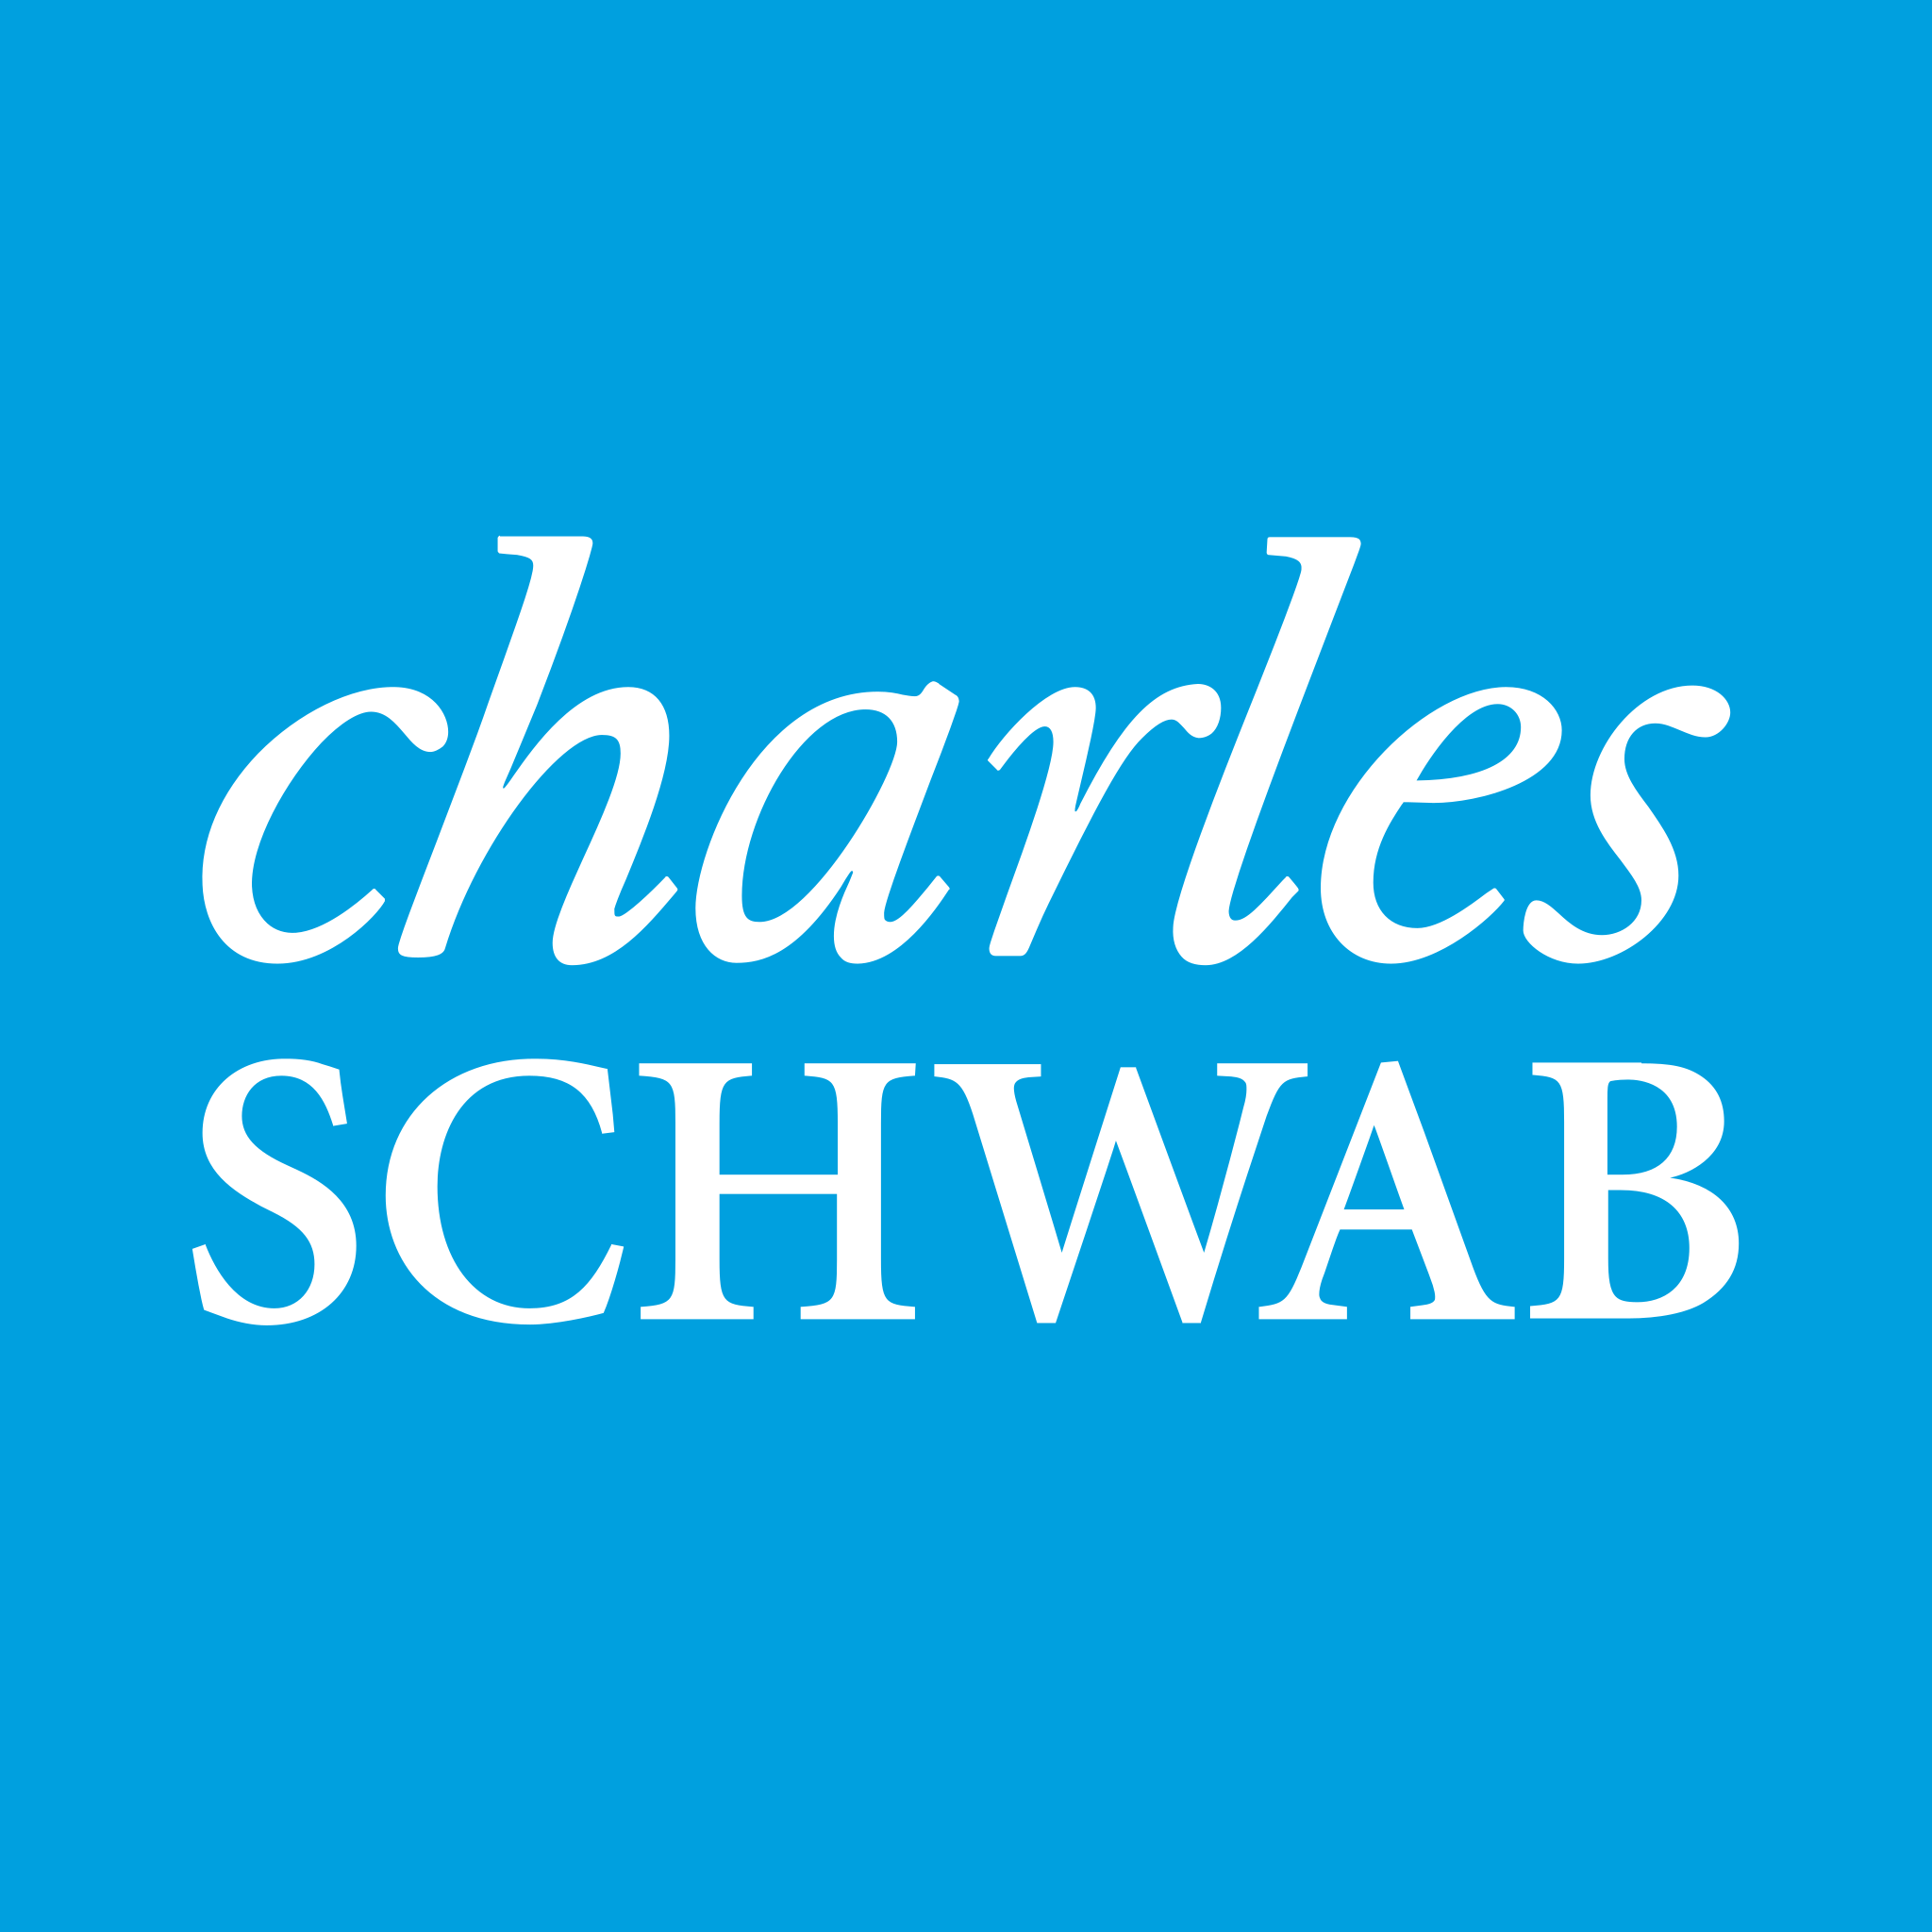  Charles_Schwab_logo..png